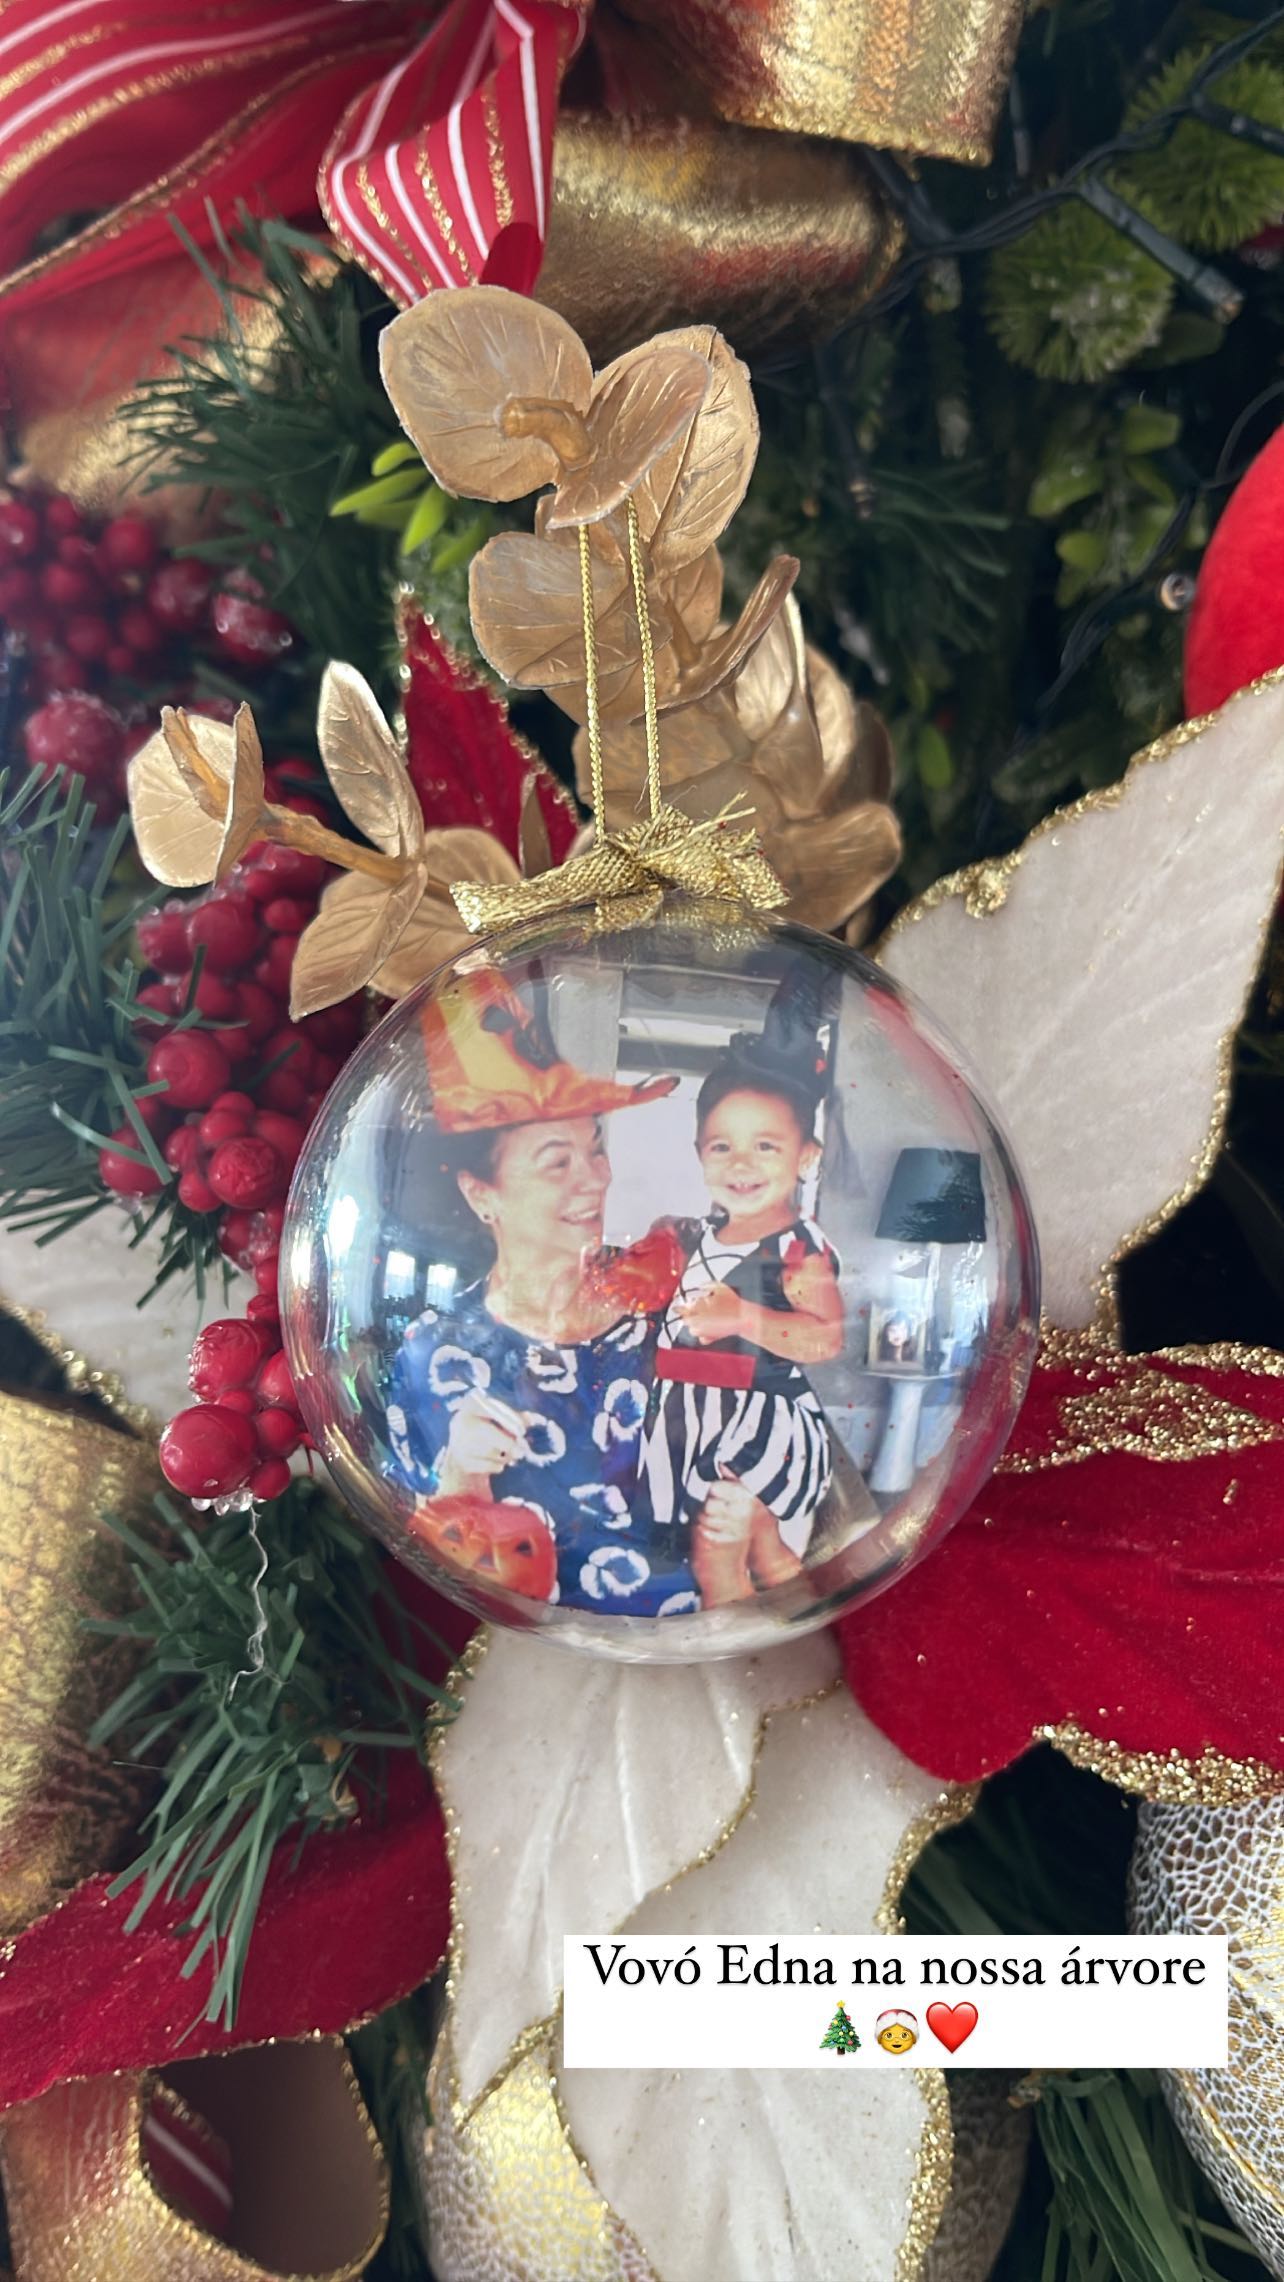 Ticiane Pinheiro emociona com homenagem à mãe de César Tralli na árvore de Natal